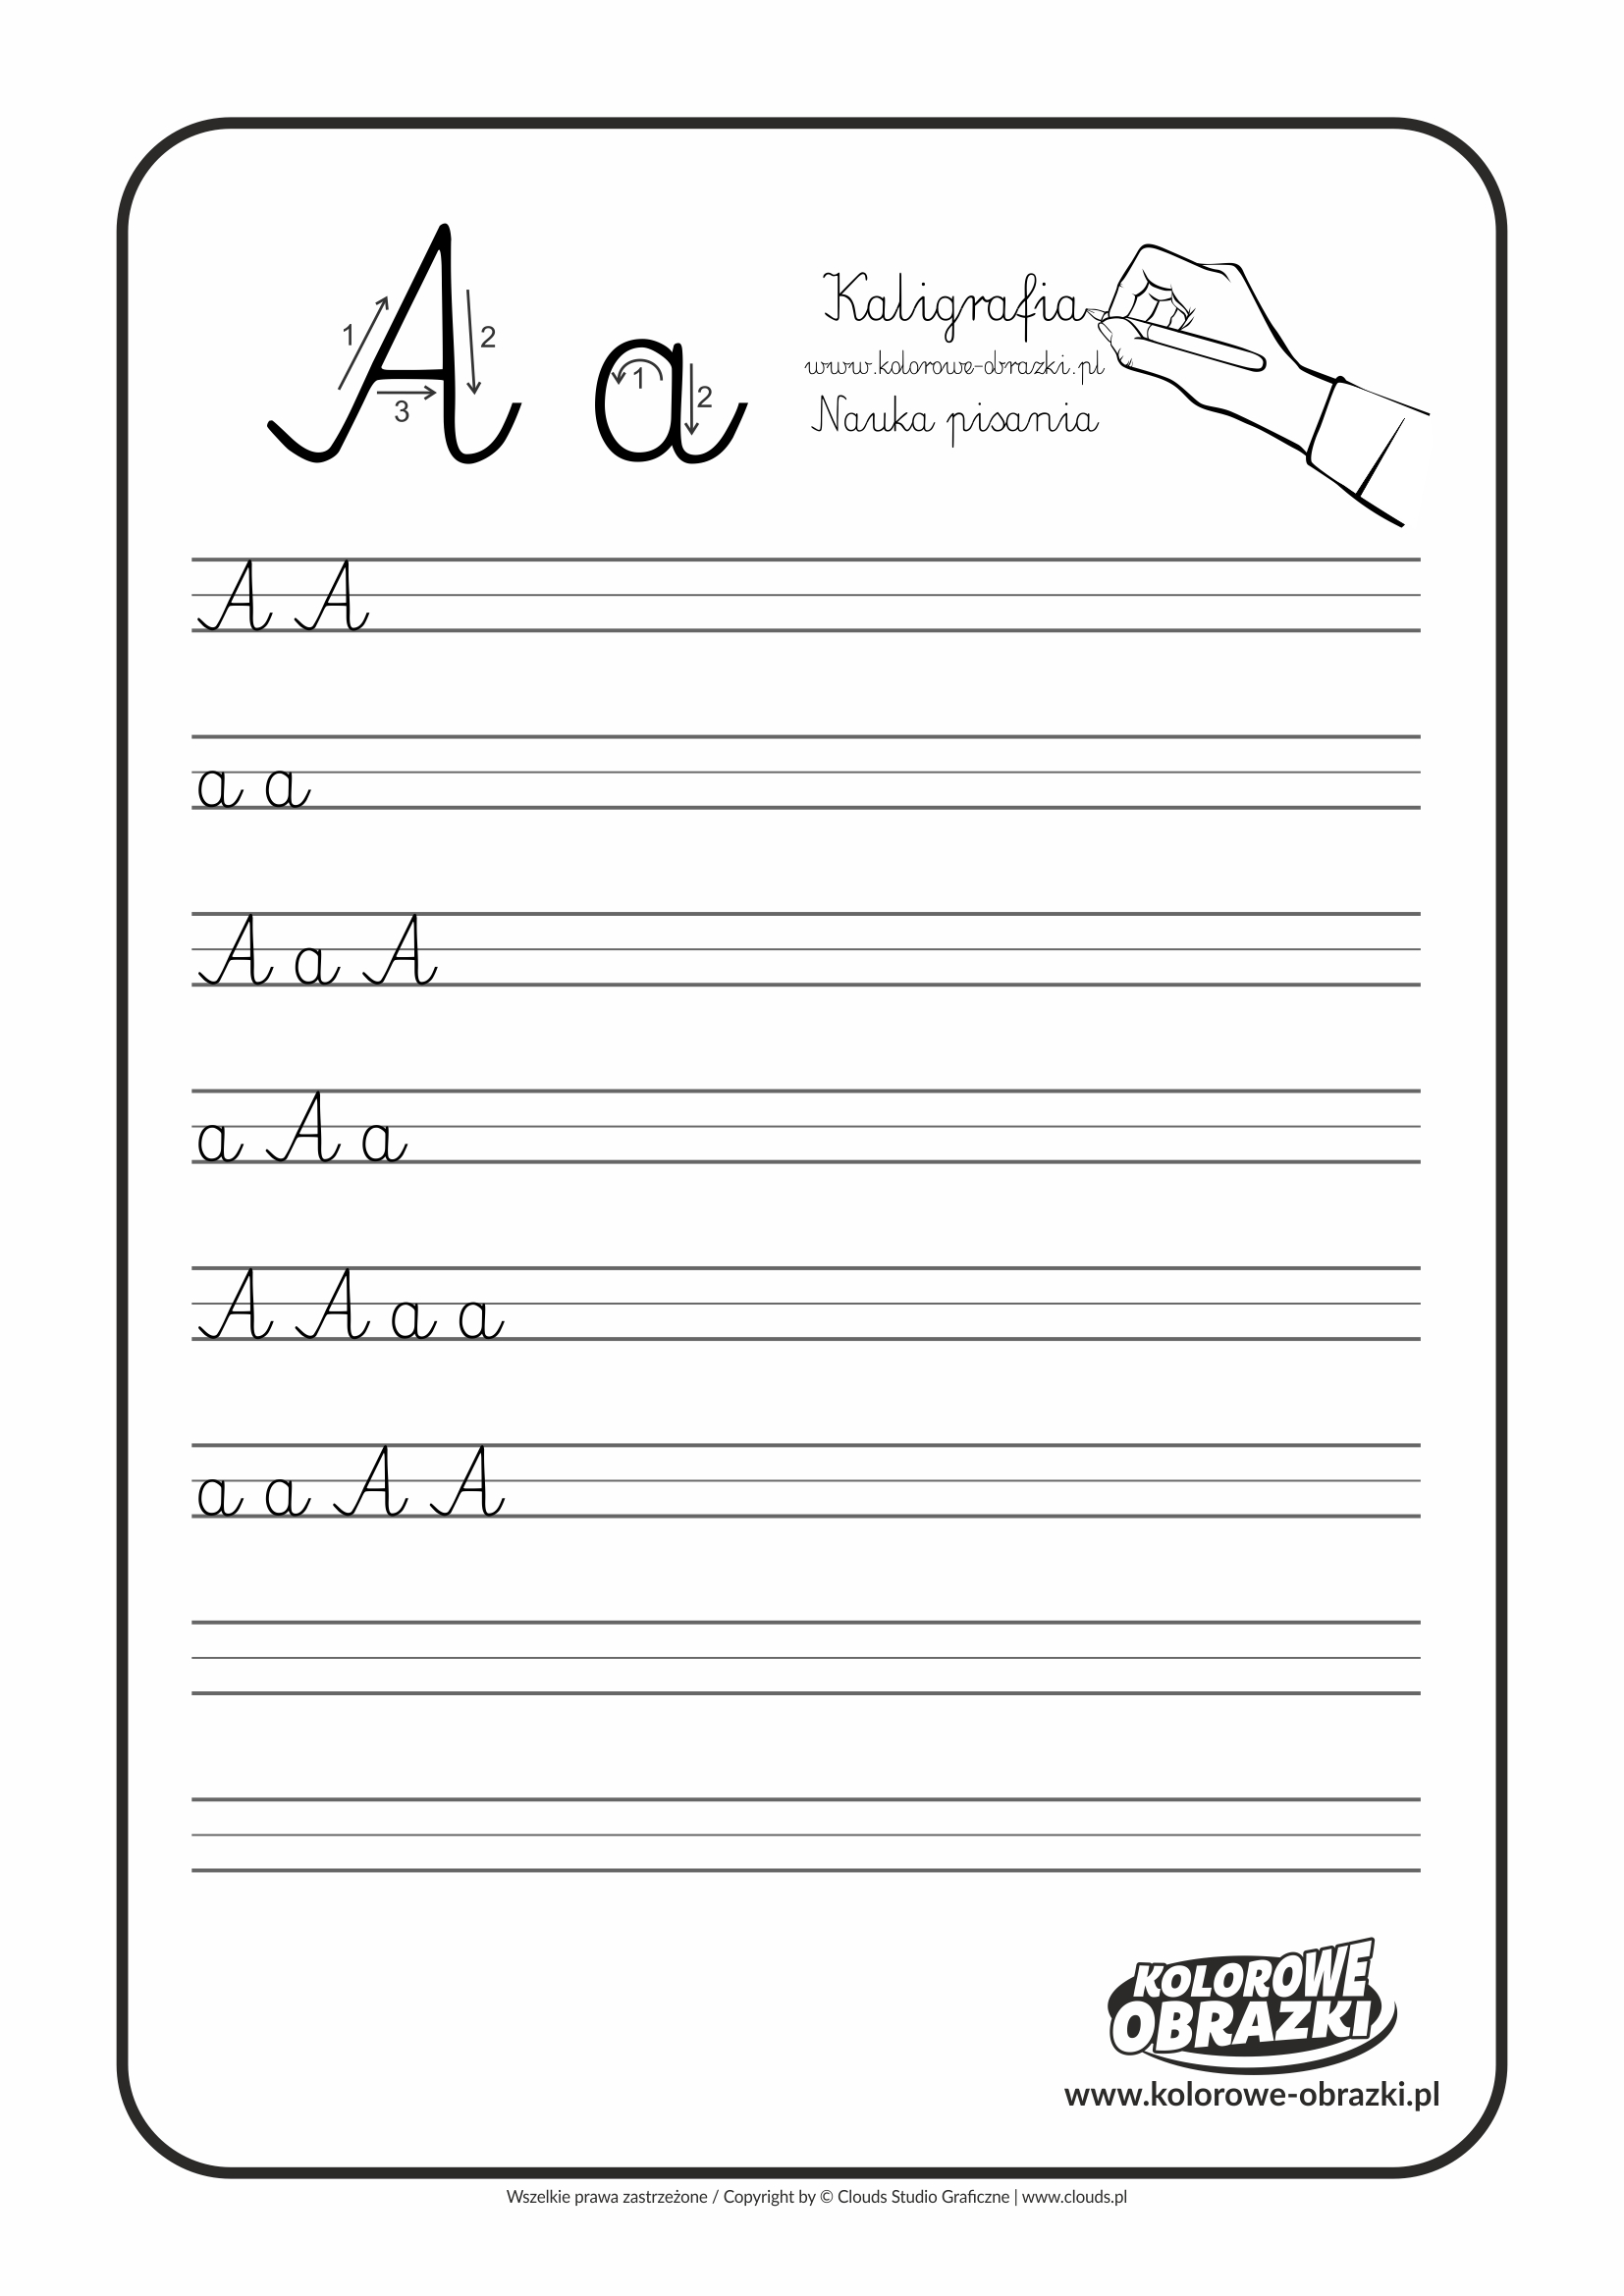 Kaligrafia dla dzieci - Ćwiczenia kaligraficzne / Litera A. Nauka pisania litery A